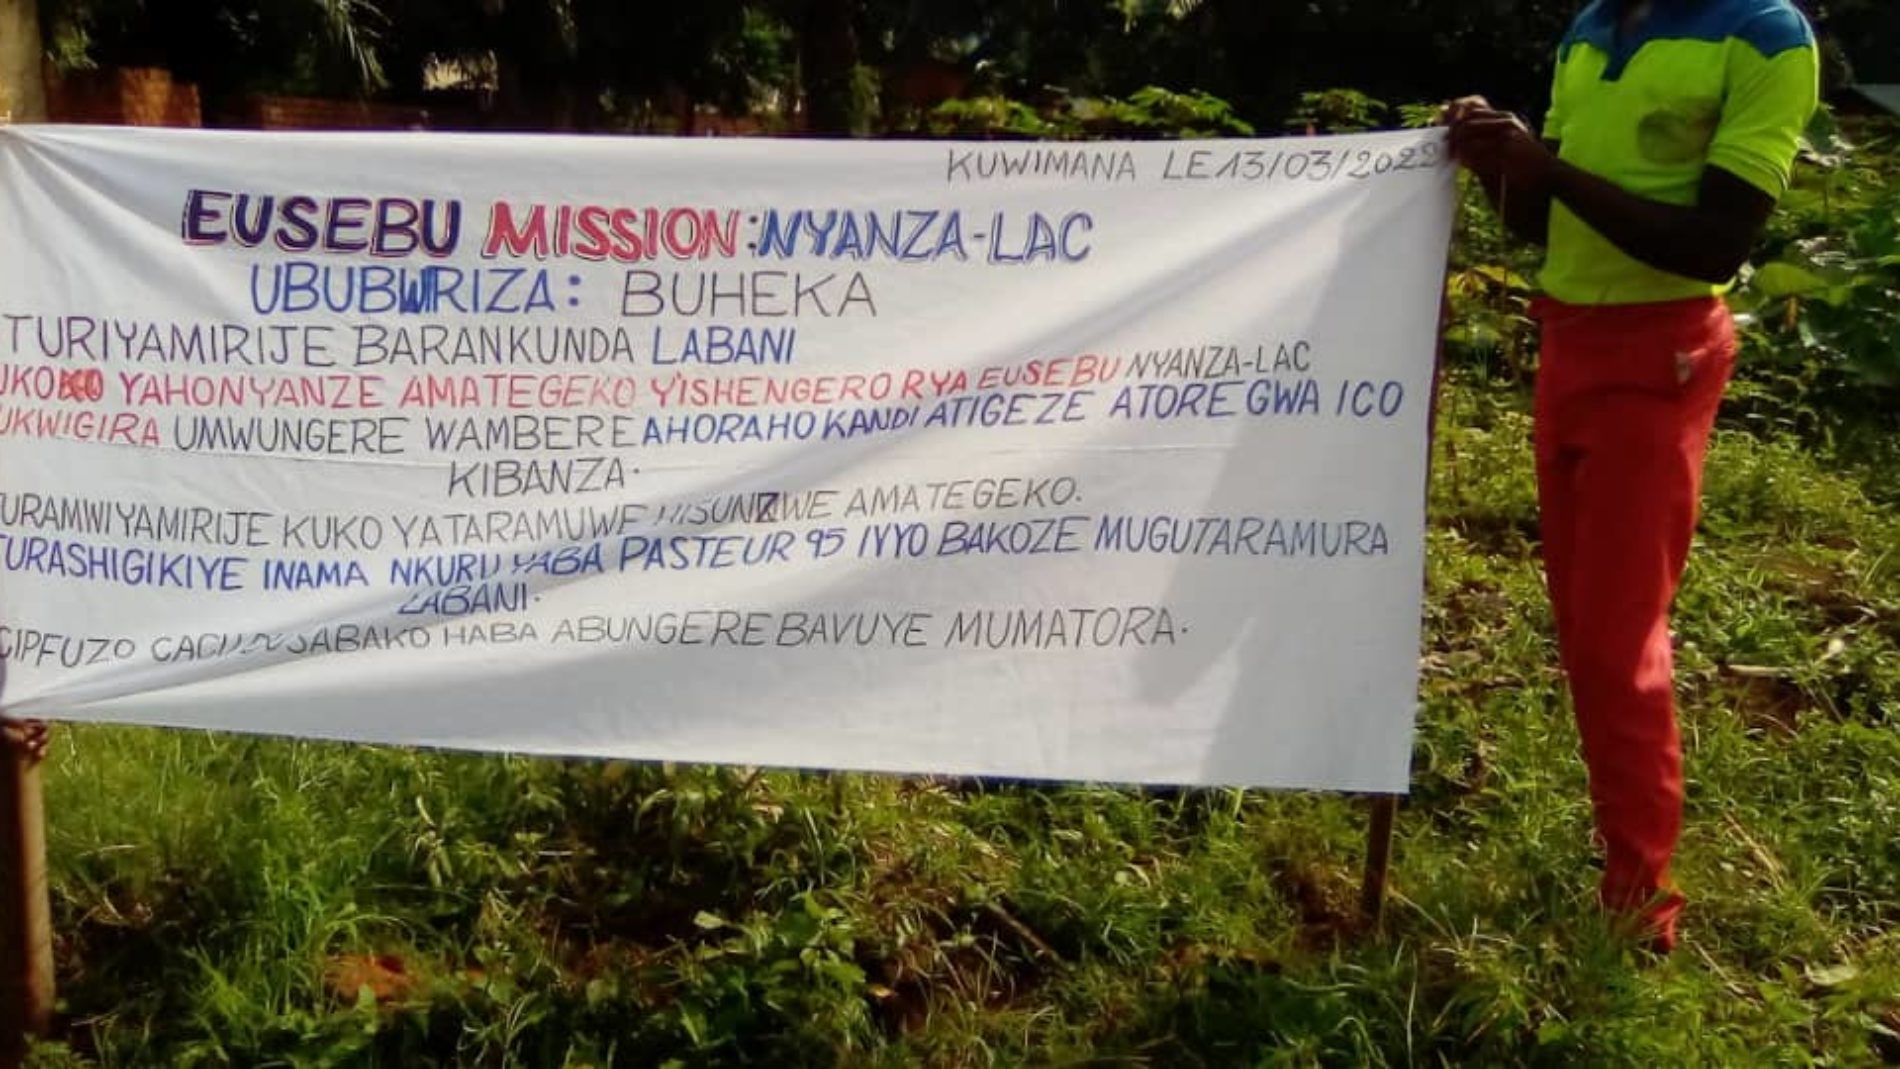 Nyanza-Lac : la crise de leadership à l’Eusebu affecte le culte